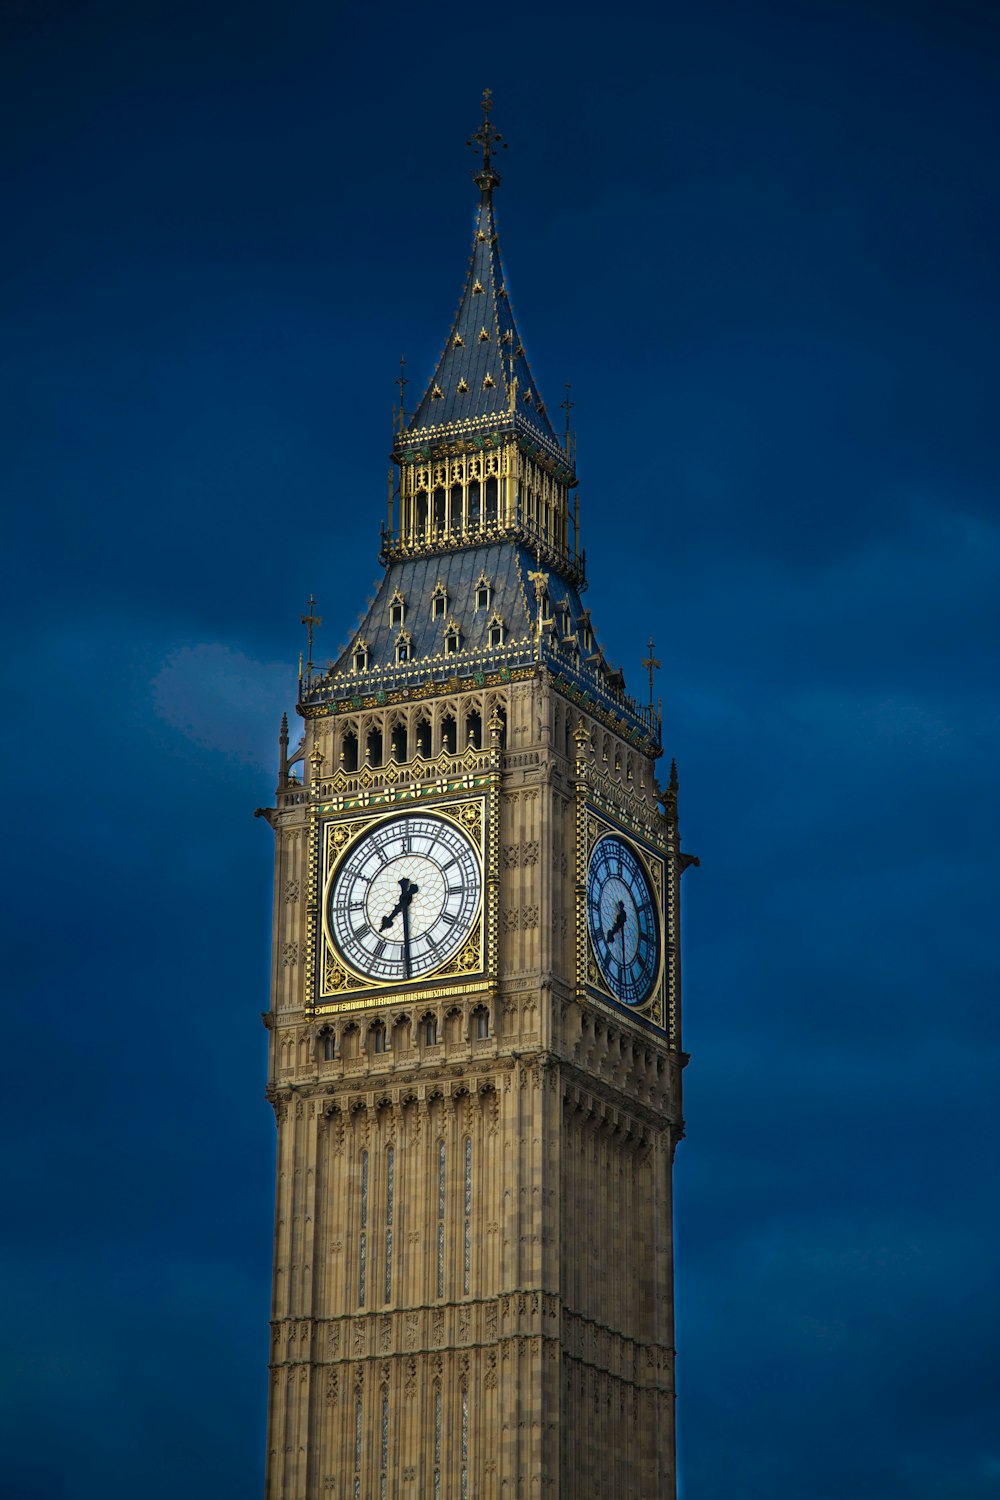 Big Ben during nighttime photo – Free London Image on Unsplash